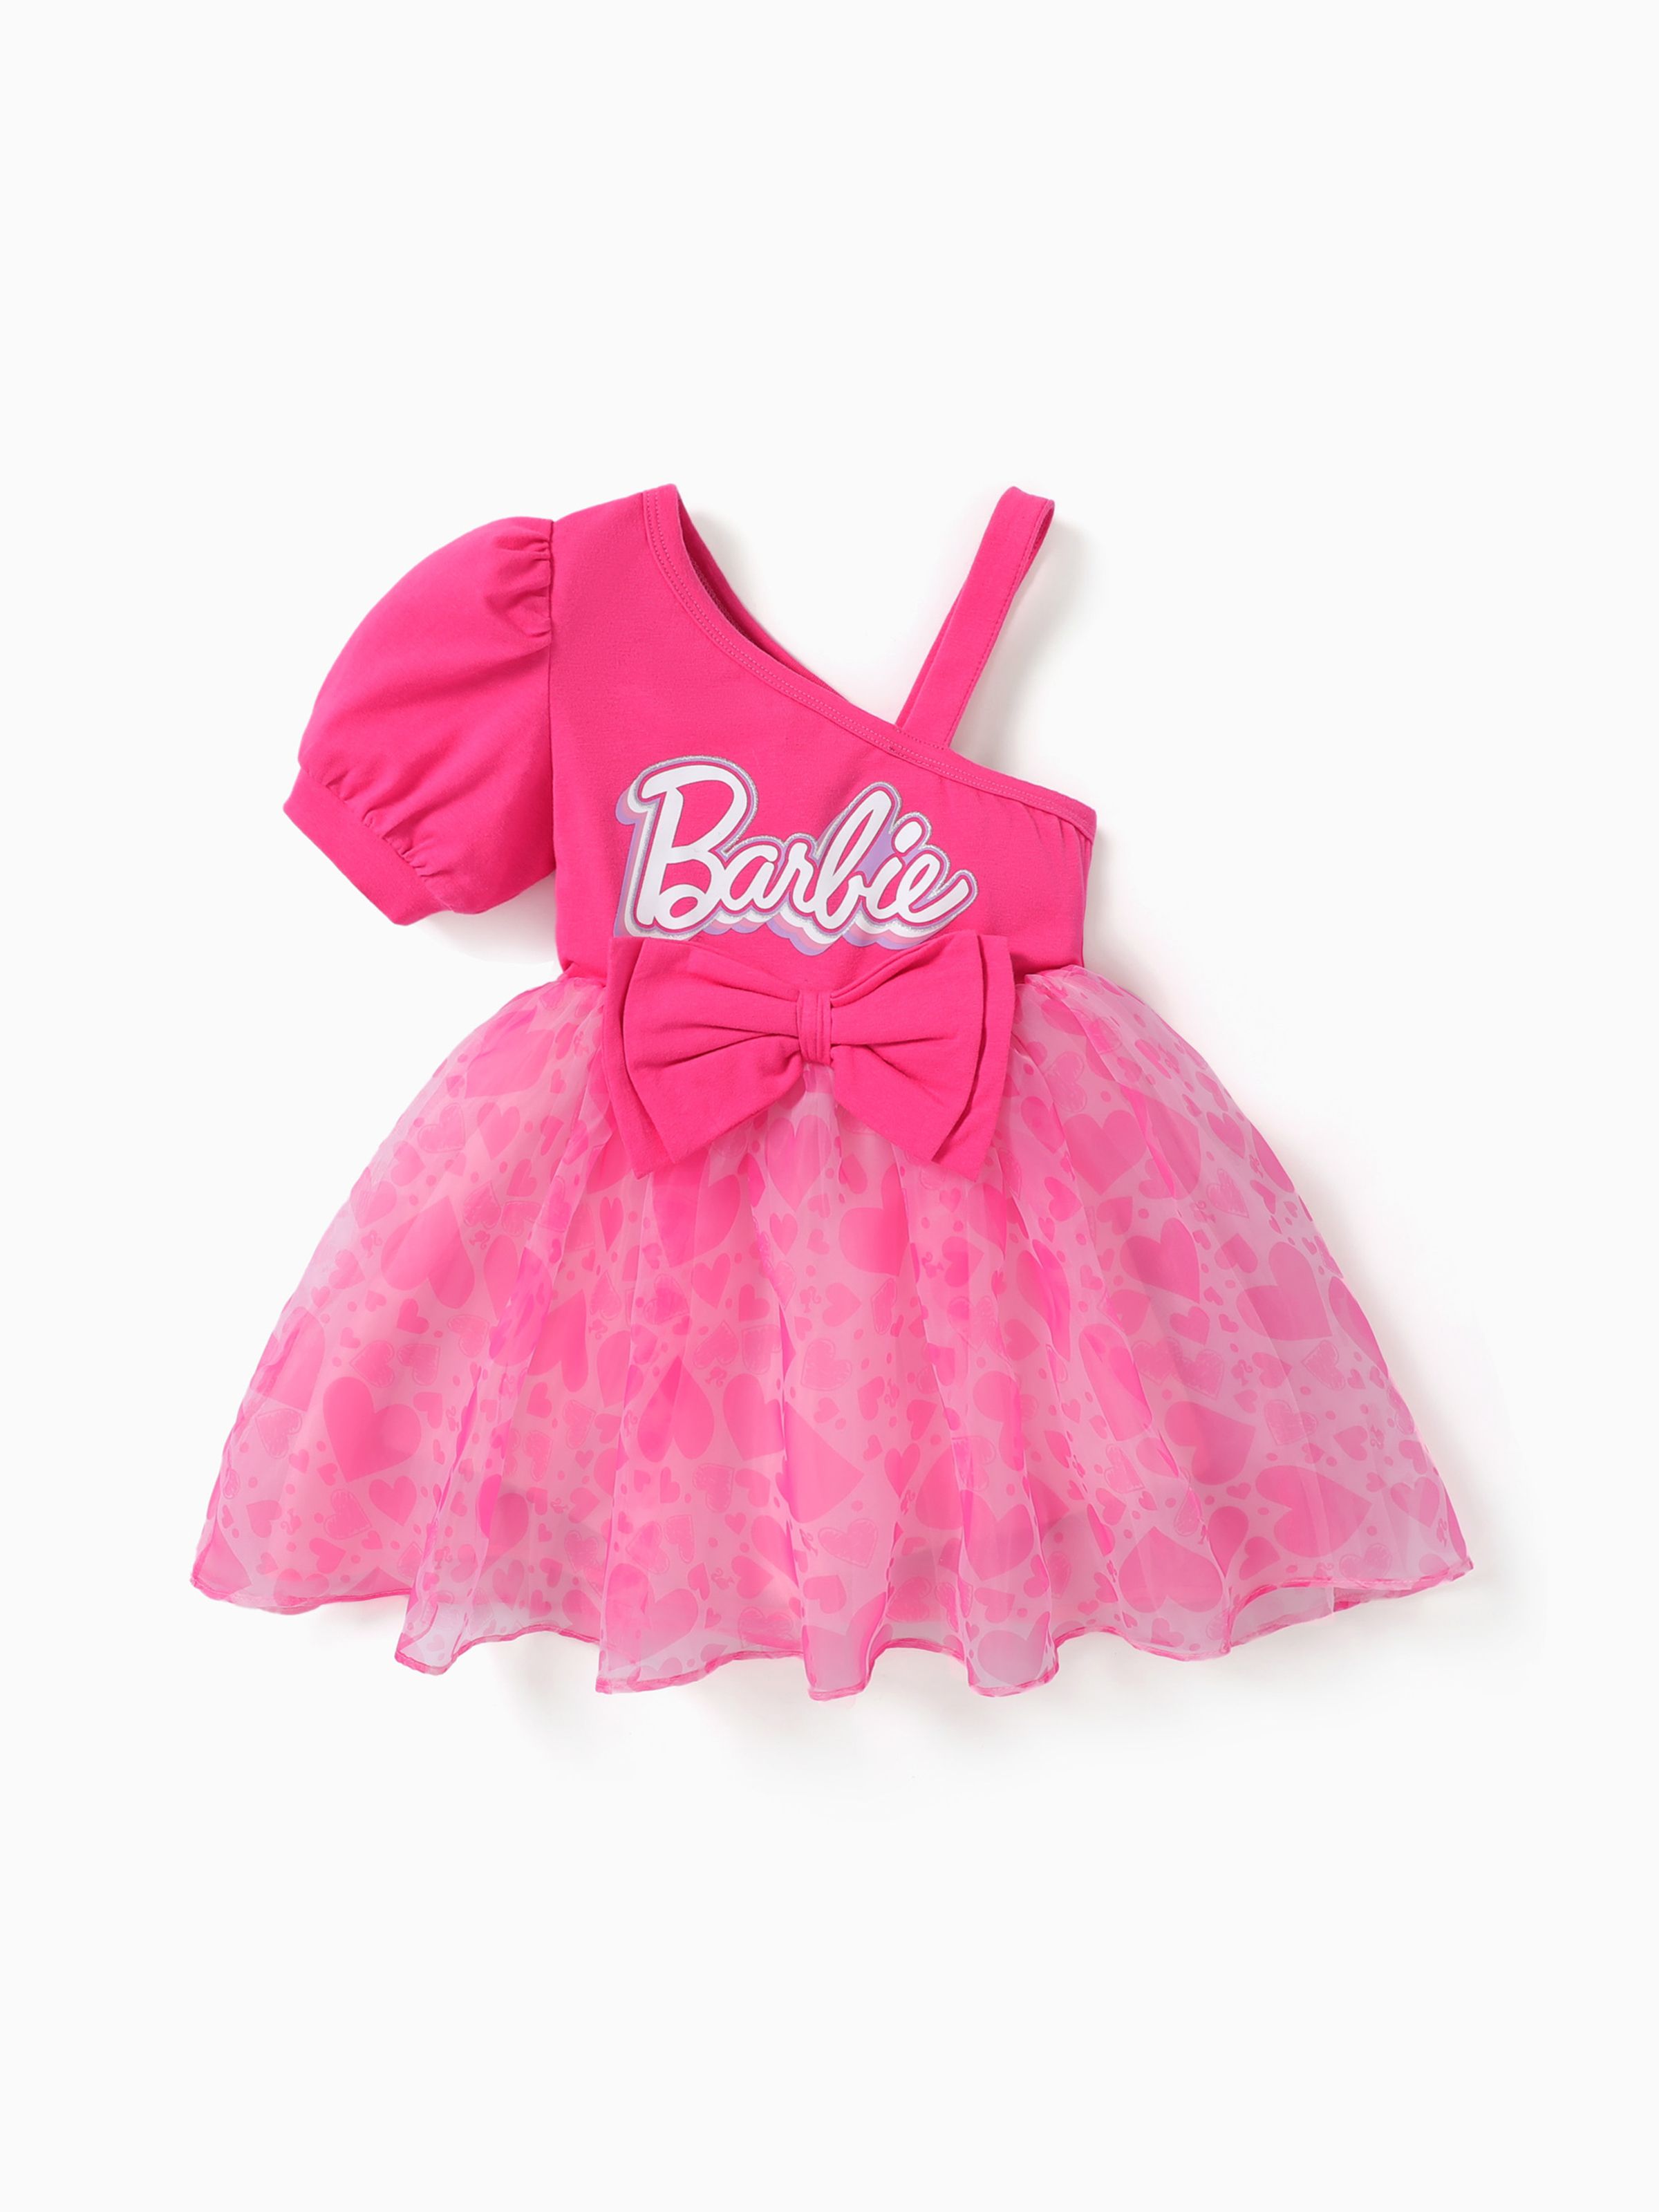 芭比娃娃 1 件裝幼兒女孩心形蝴蝶結單肩喇叭形網眼連衣裙